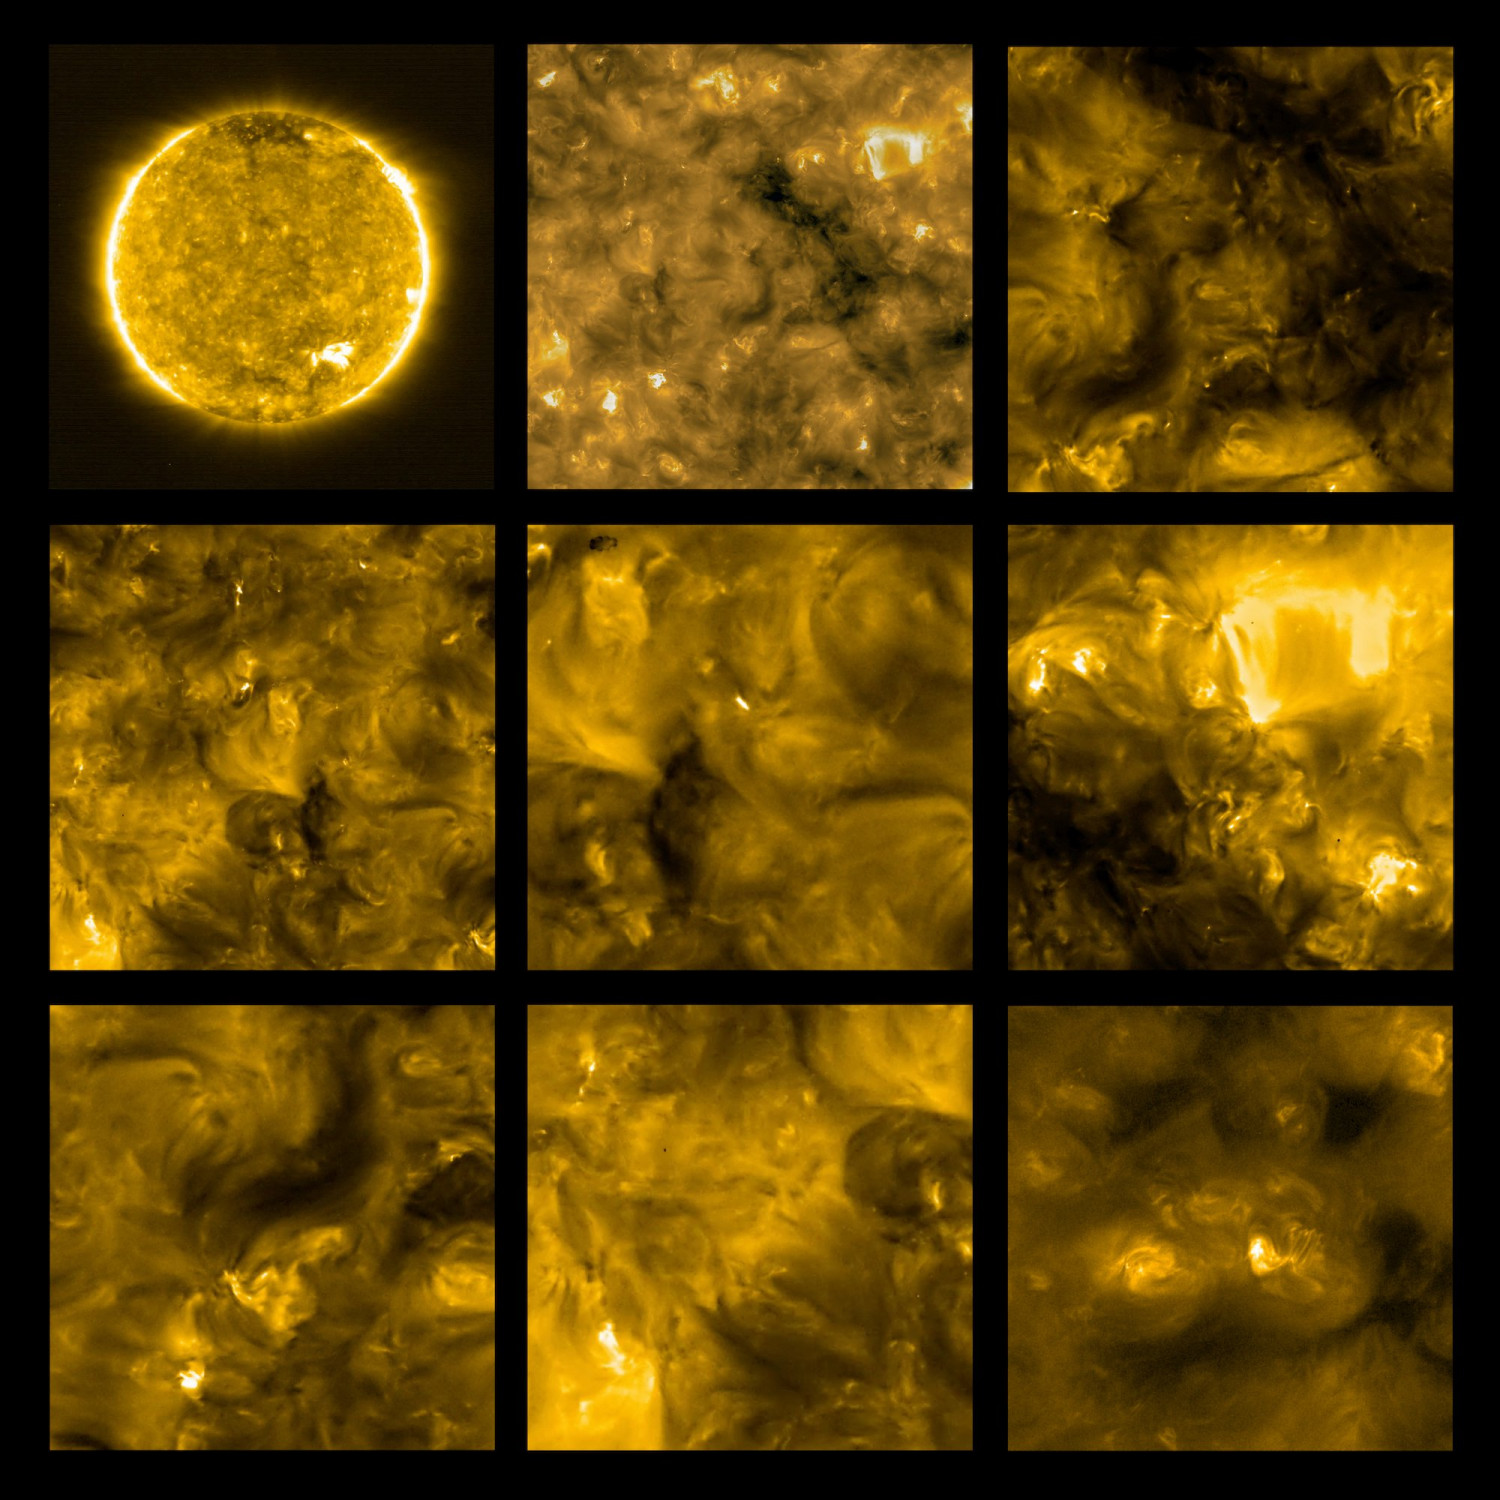 Aufnahmen der Sonne von der Solar Orbiter Mission